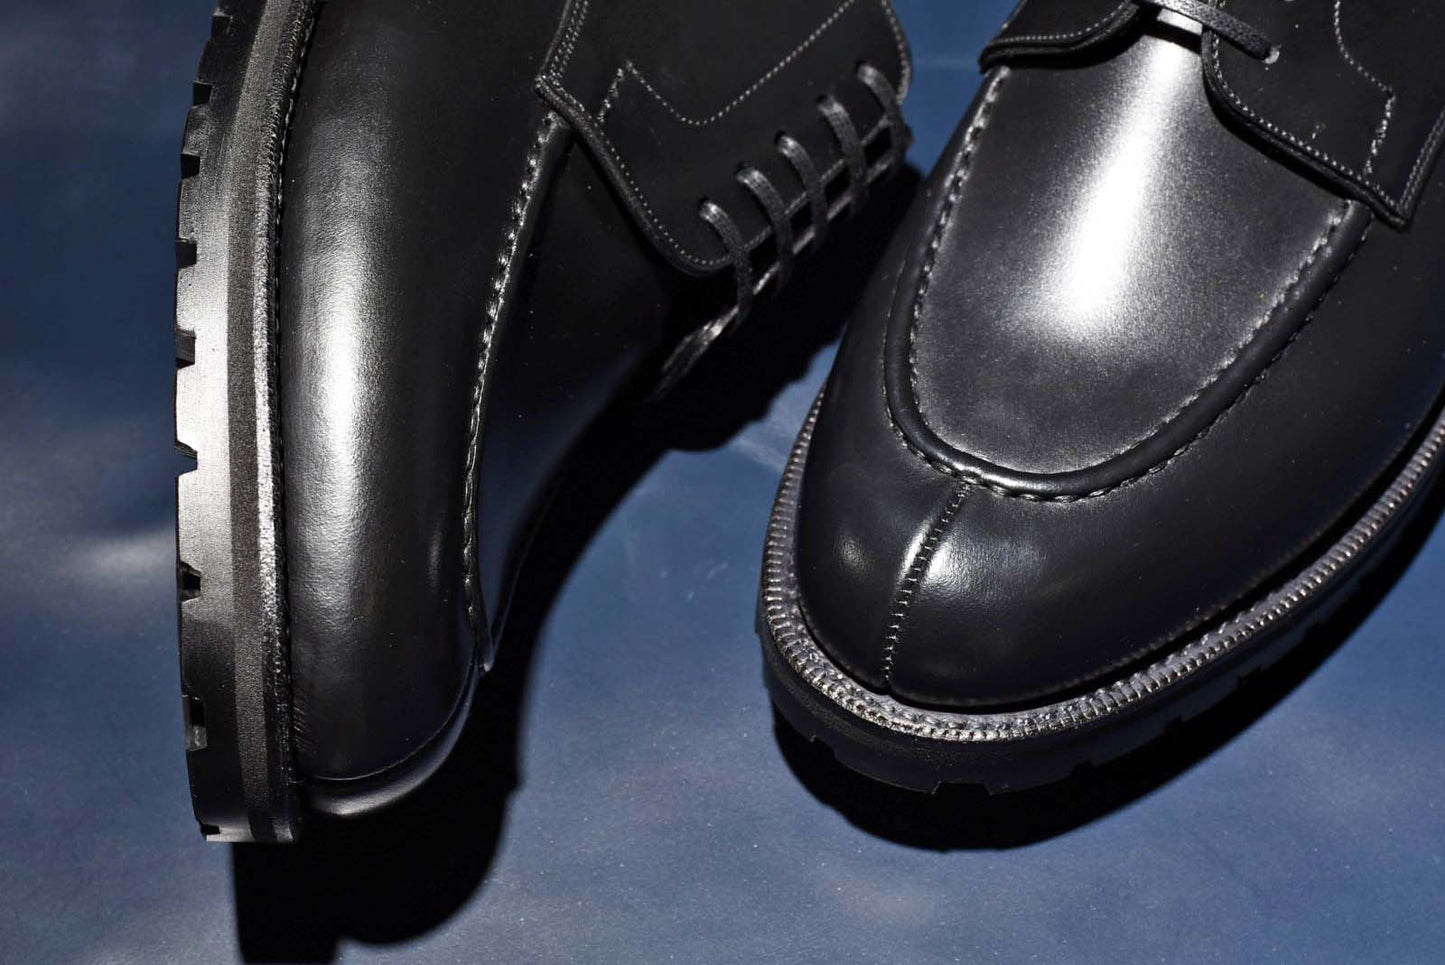 コマンドソール Uチップ ブラック Zach RAYMAR グッドイヤーウェルト ビジネスシューズ 革靴 24.0cm‾27.0cm レイマー 外羽根 ラバーソール ダブルソール